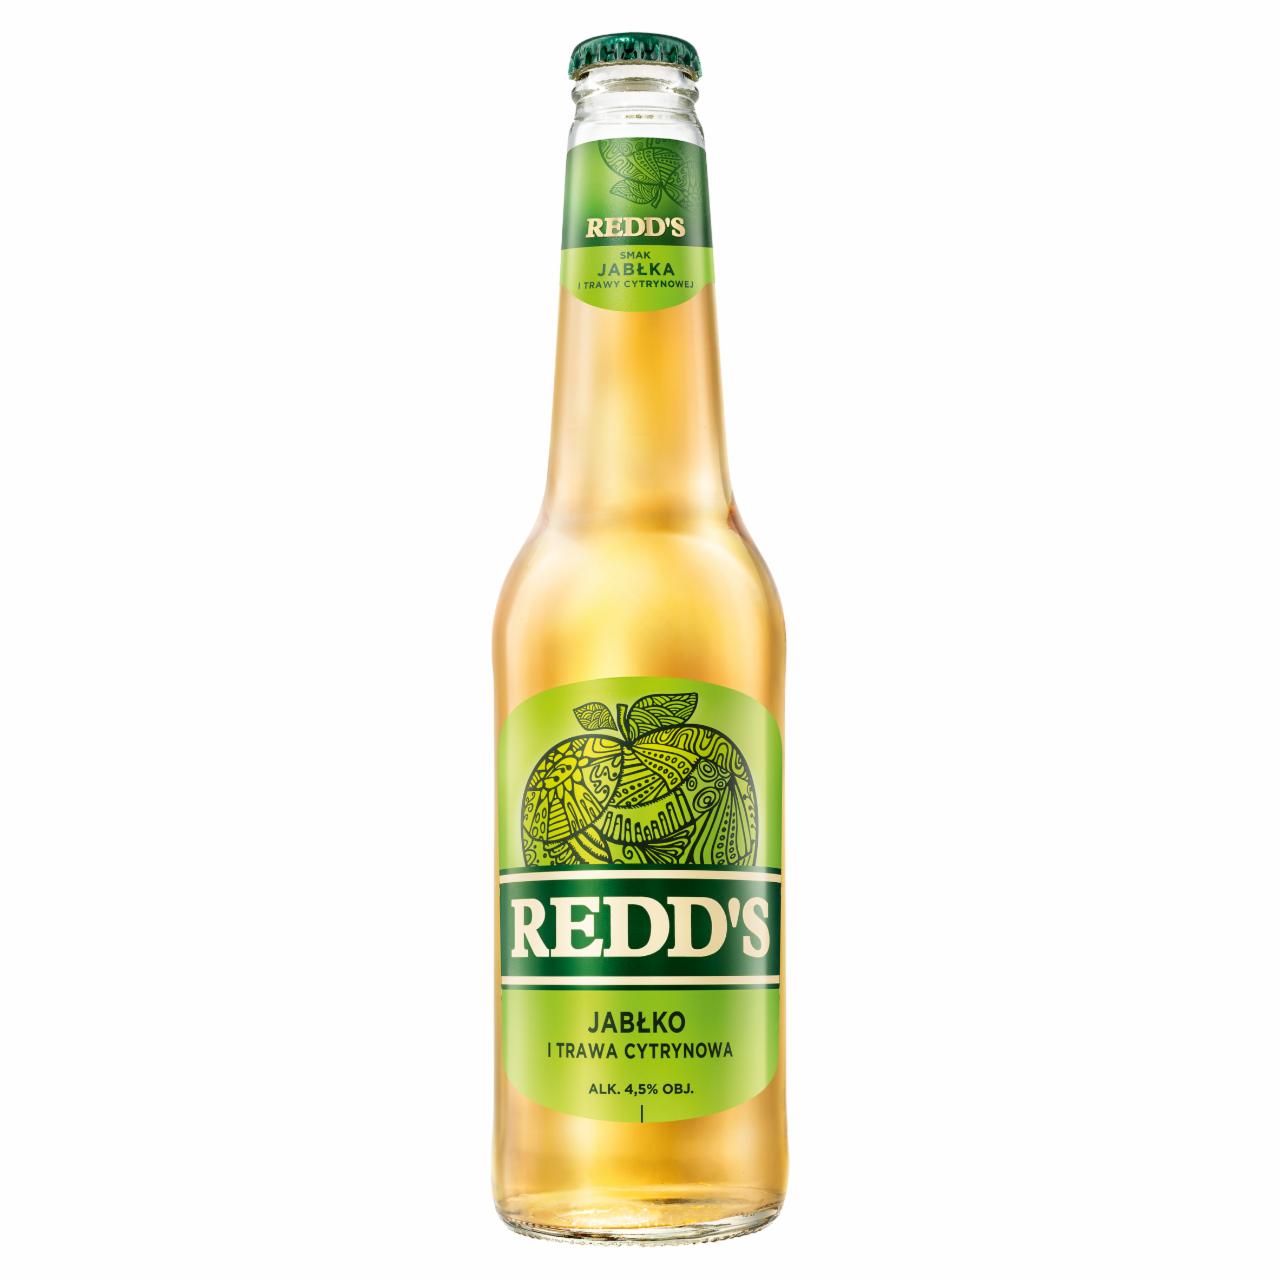 Zdjęcia - Redd's Piwo smak jabłka i trawy cytrynowej 400 ml